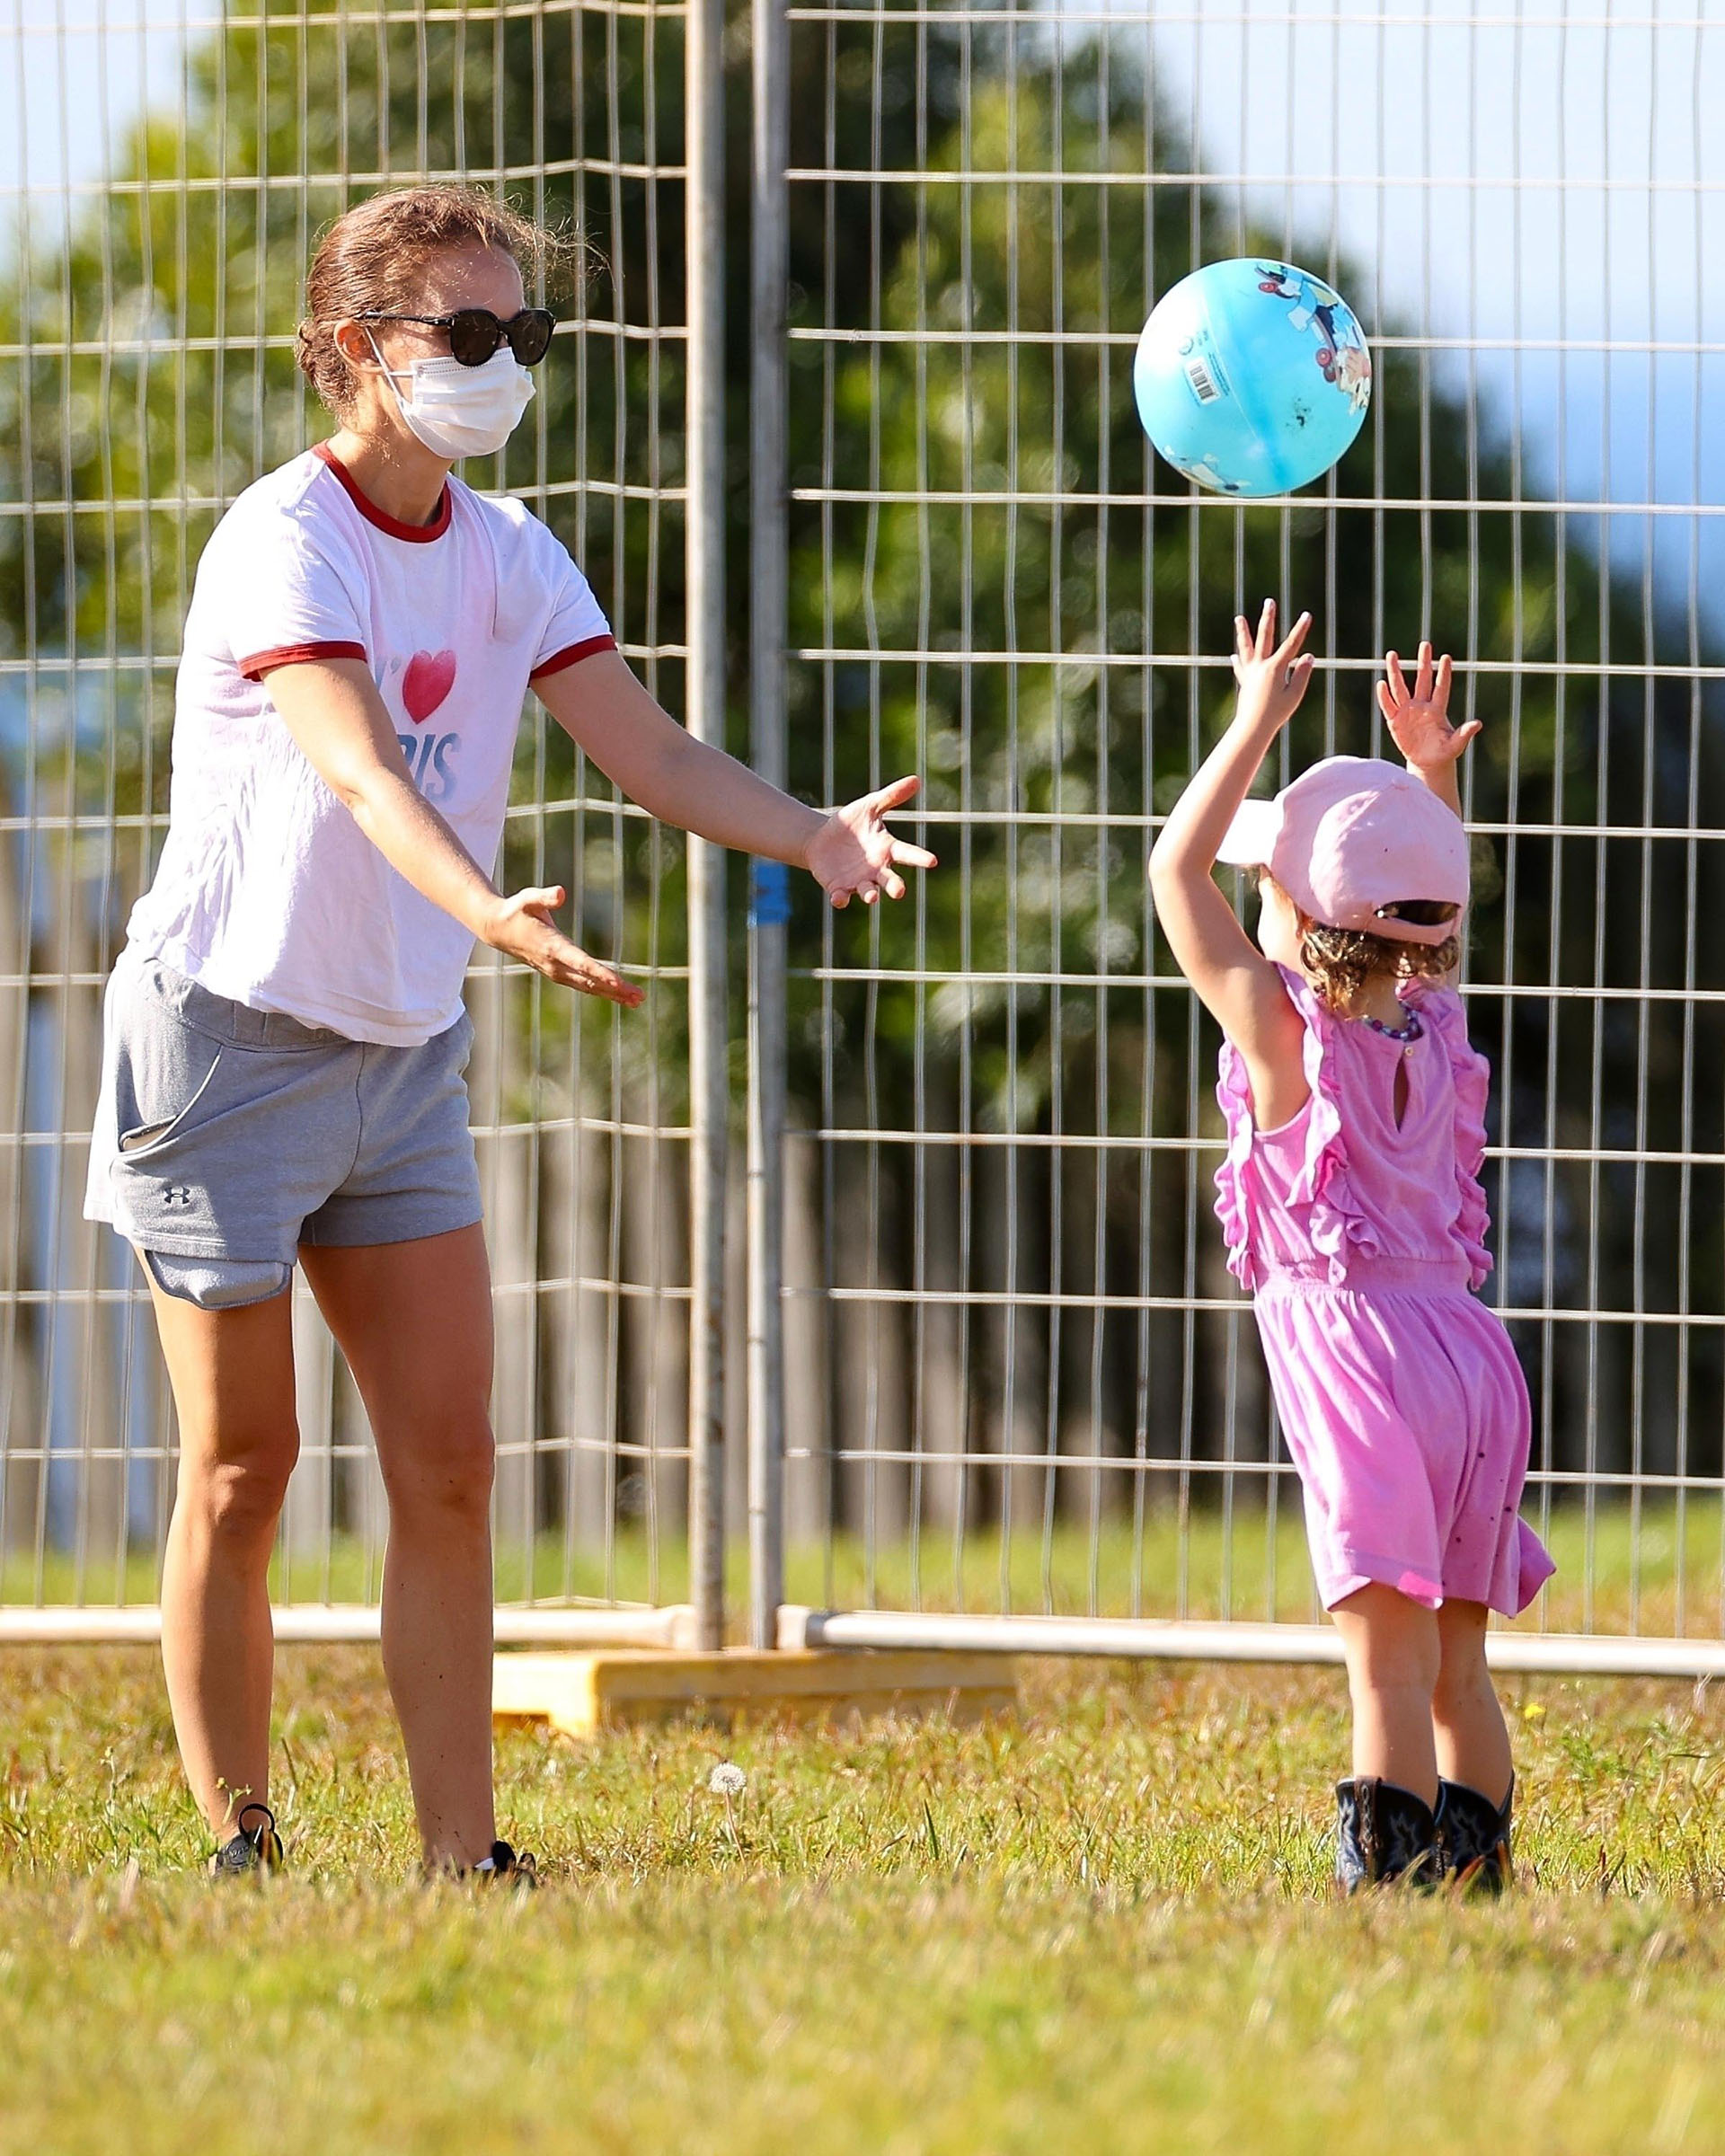 Día en familia. Natalie Portman disfrutó de una tarde en el parque junto a su hija en Sídney. Allí, jugaron a la pelota y se entretuvieron al aire libre (Fotos: The Grosby Group)